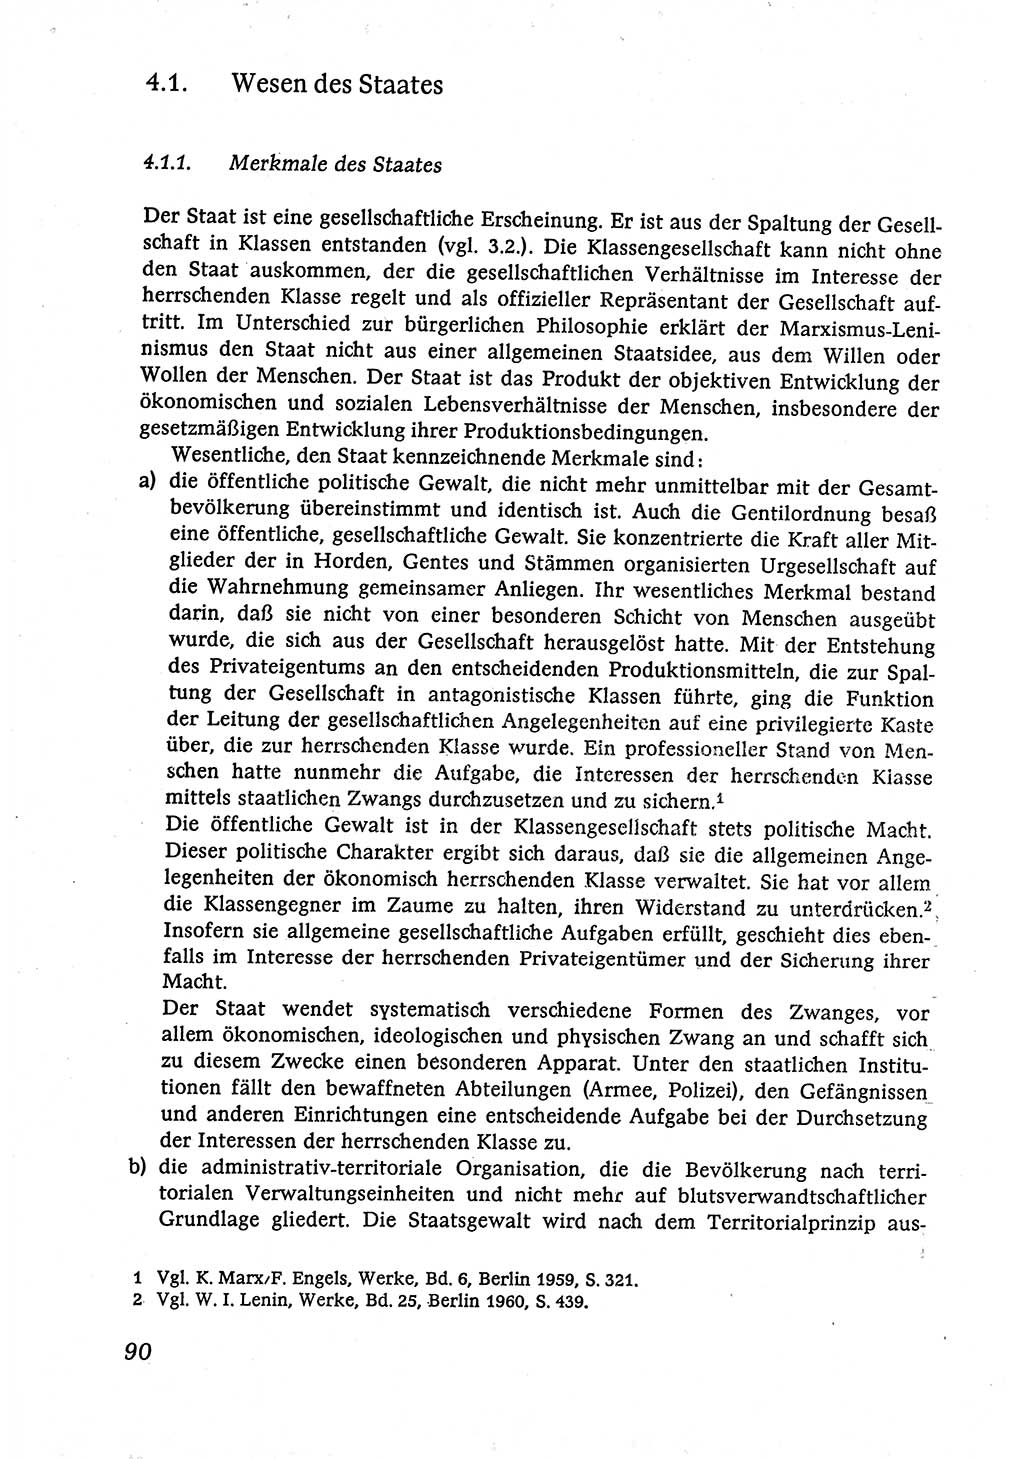 Marxistisch-leninistische (ML) Staats- und Rechtstheorie [Deutsche Demokratische Republik (DDR)], Lehrbuch 1980, Seite 90 (ML St.-R.-Th. DDR Lb. 1980, S. 90)